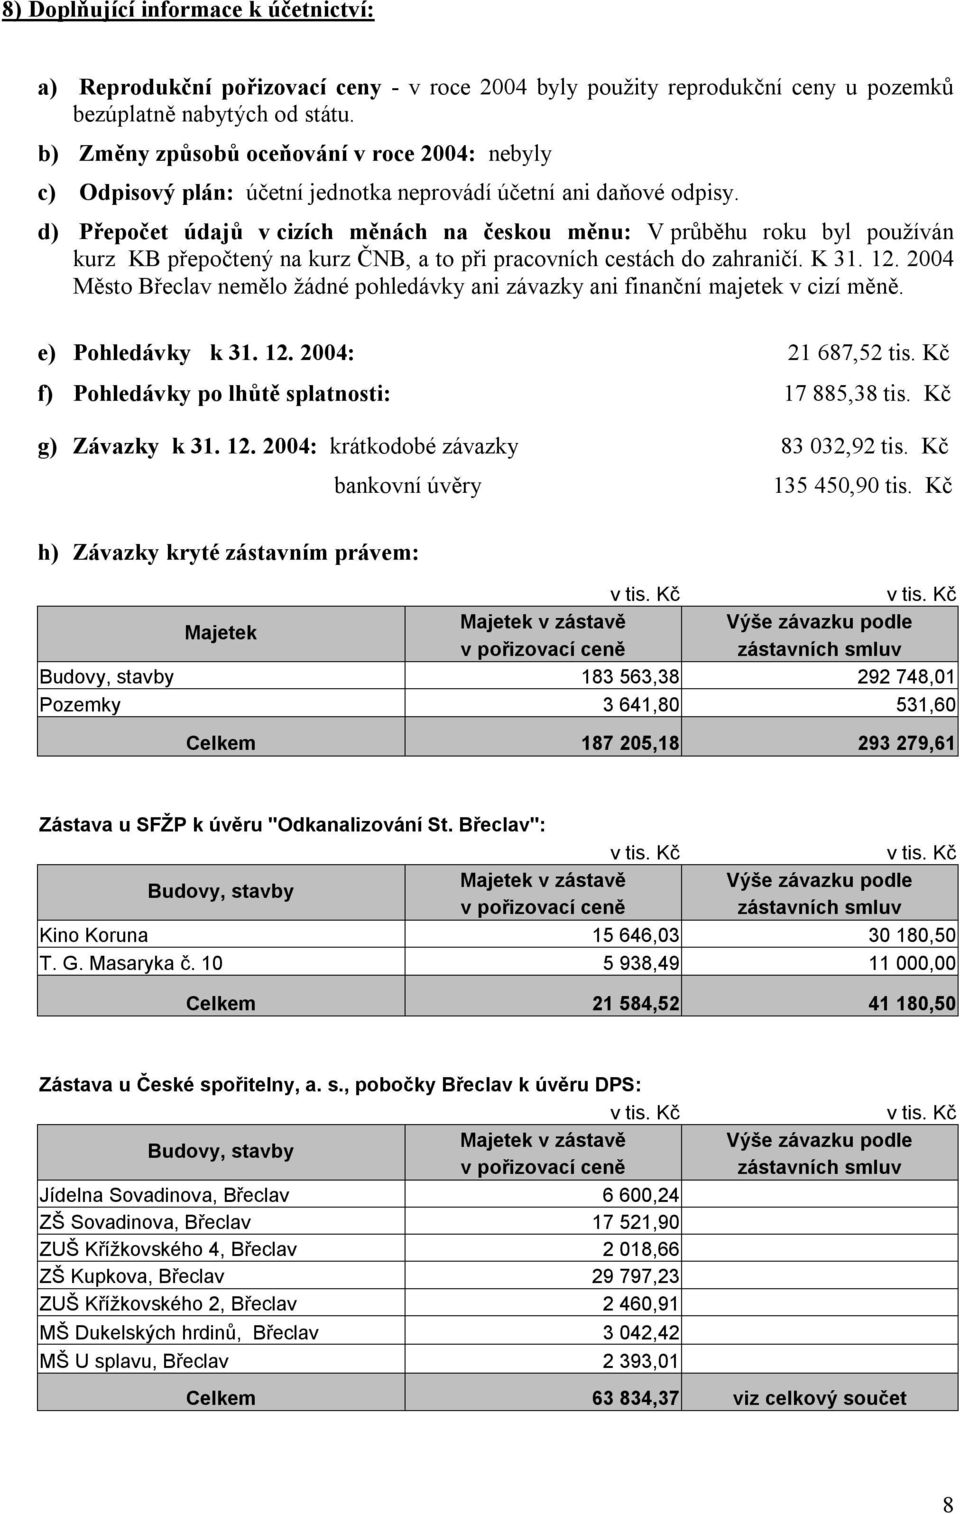 d) Přepočet údajů v cizích měnách na českou měnu: V průběhu roku byl používán kurz KB přepočtený na kurz ČNB, a to při pracovních cestách do zahraničí. K 31. 12.